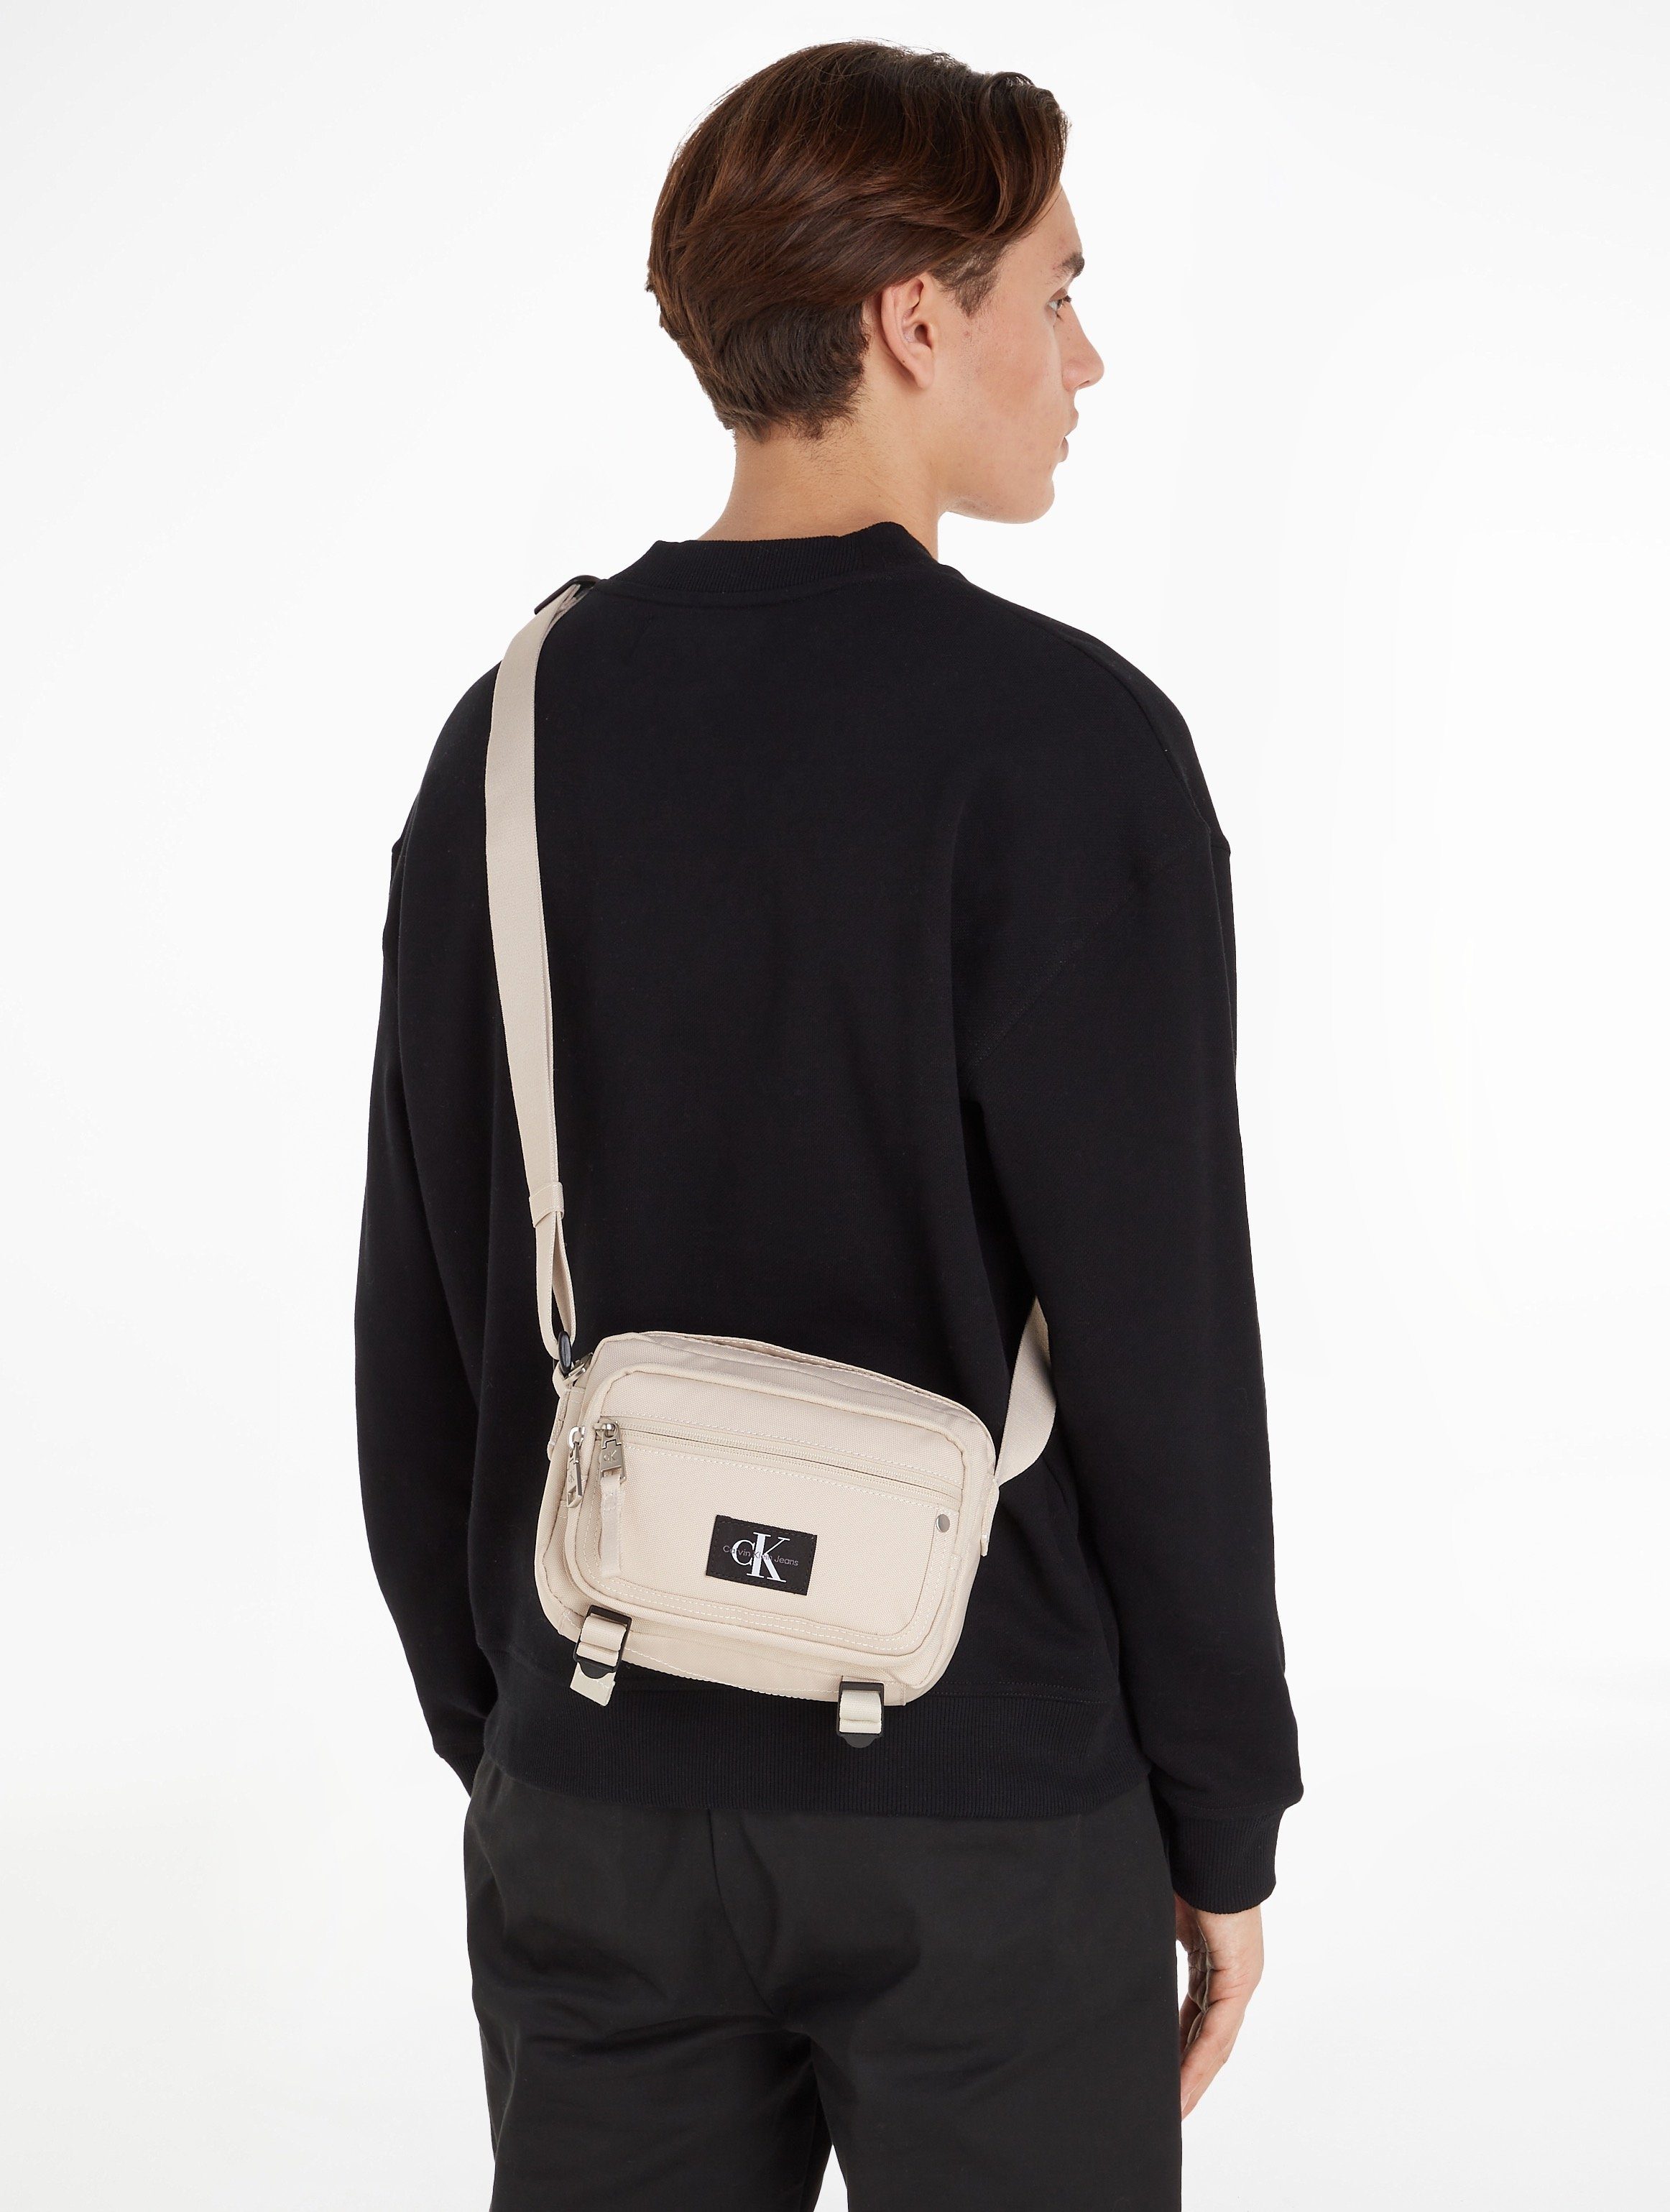 Calvin Klein SPORT beige im Bag CAMERA Design Jeans BAG21 W, praktischen Mini ESSENTIALS